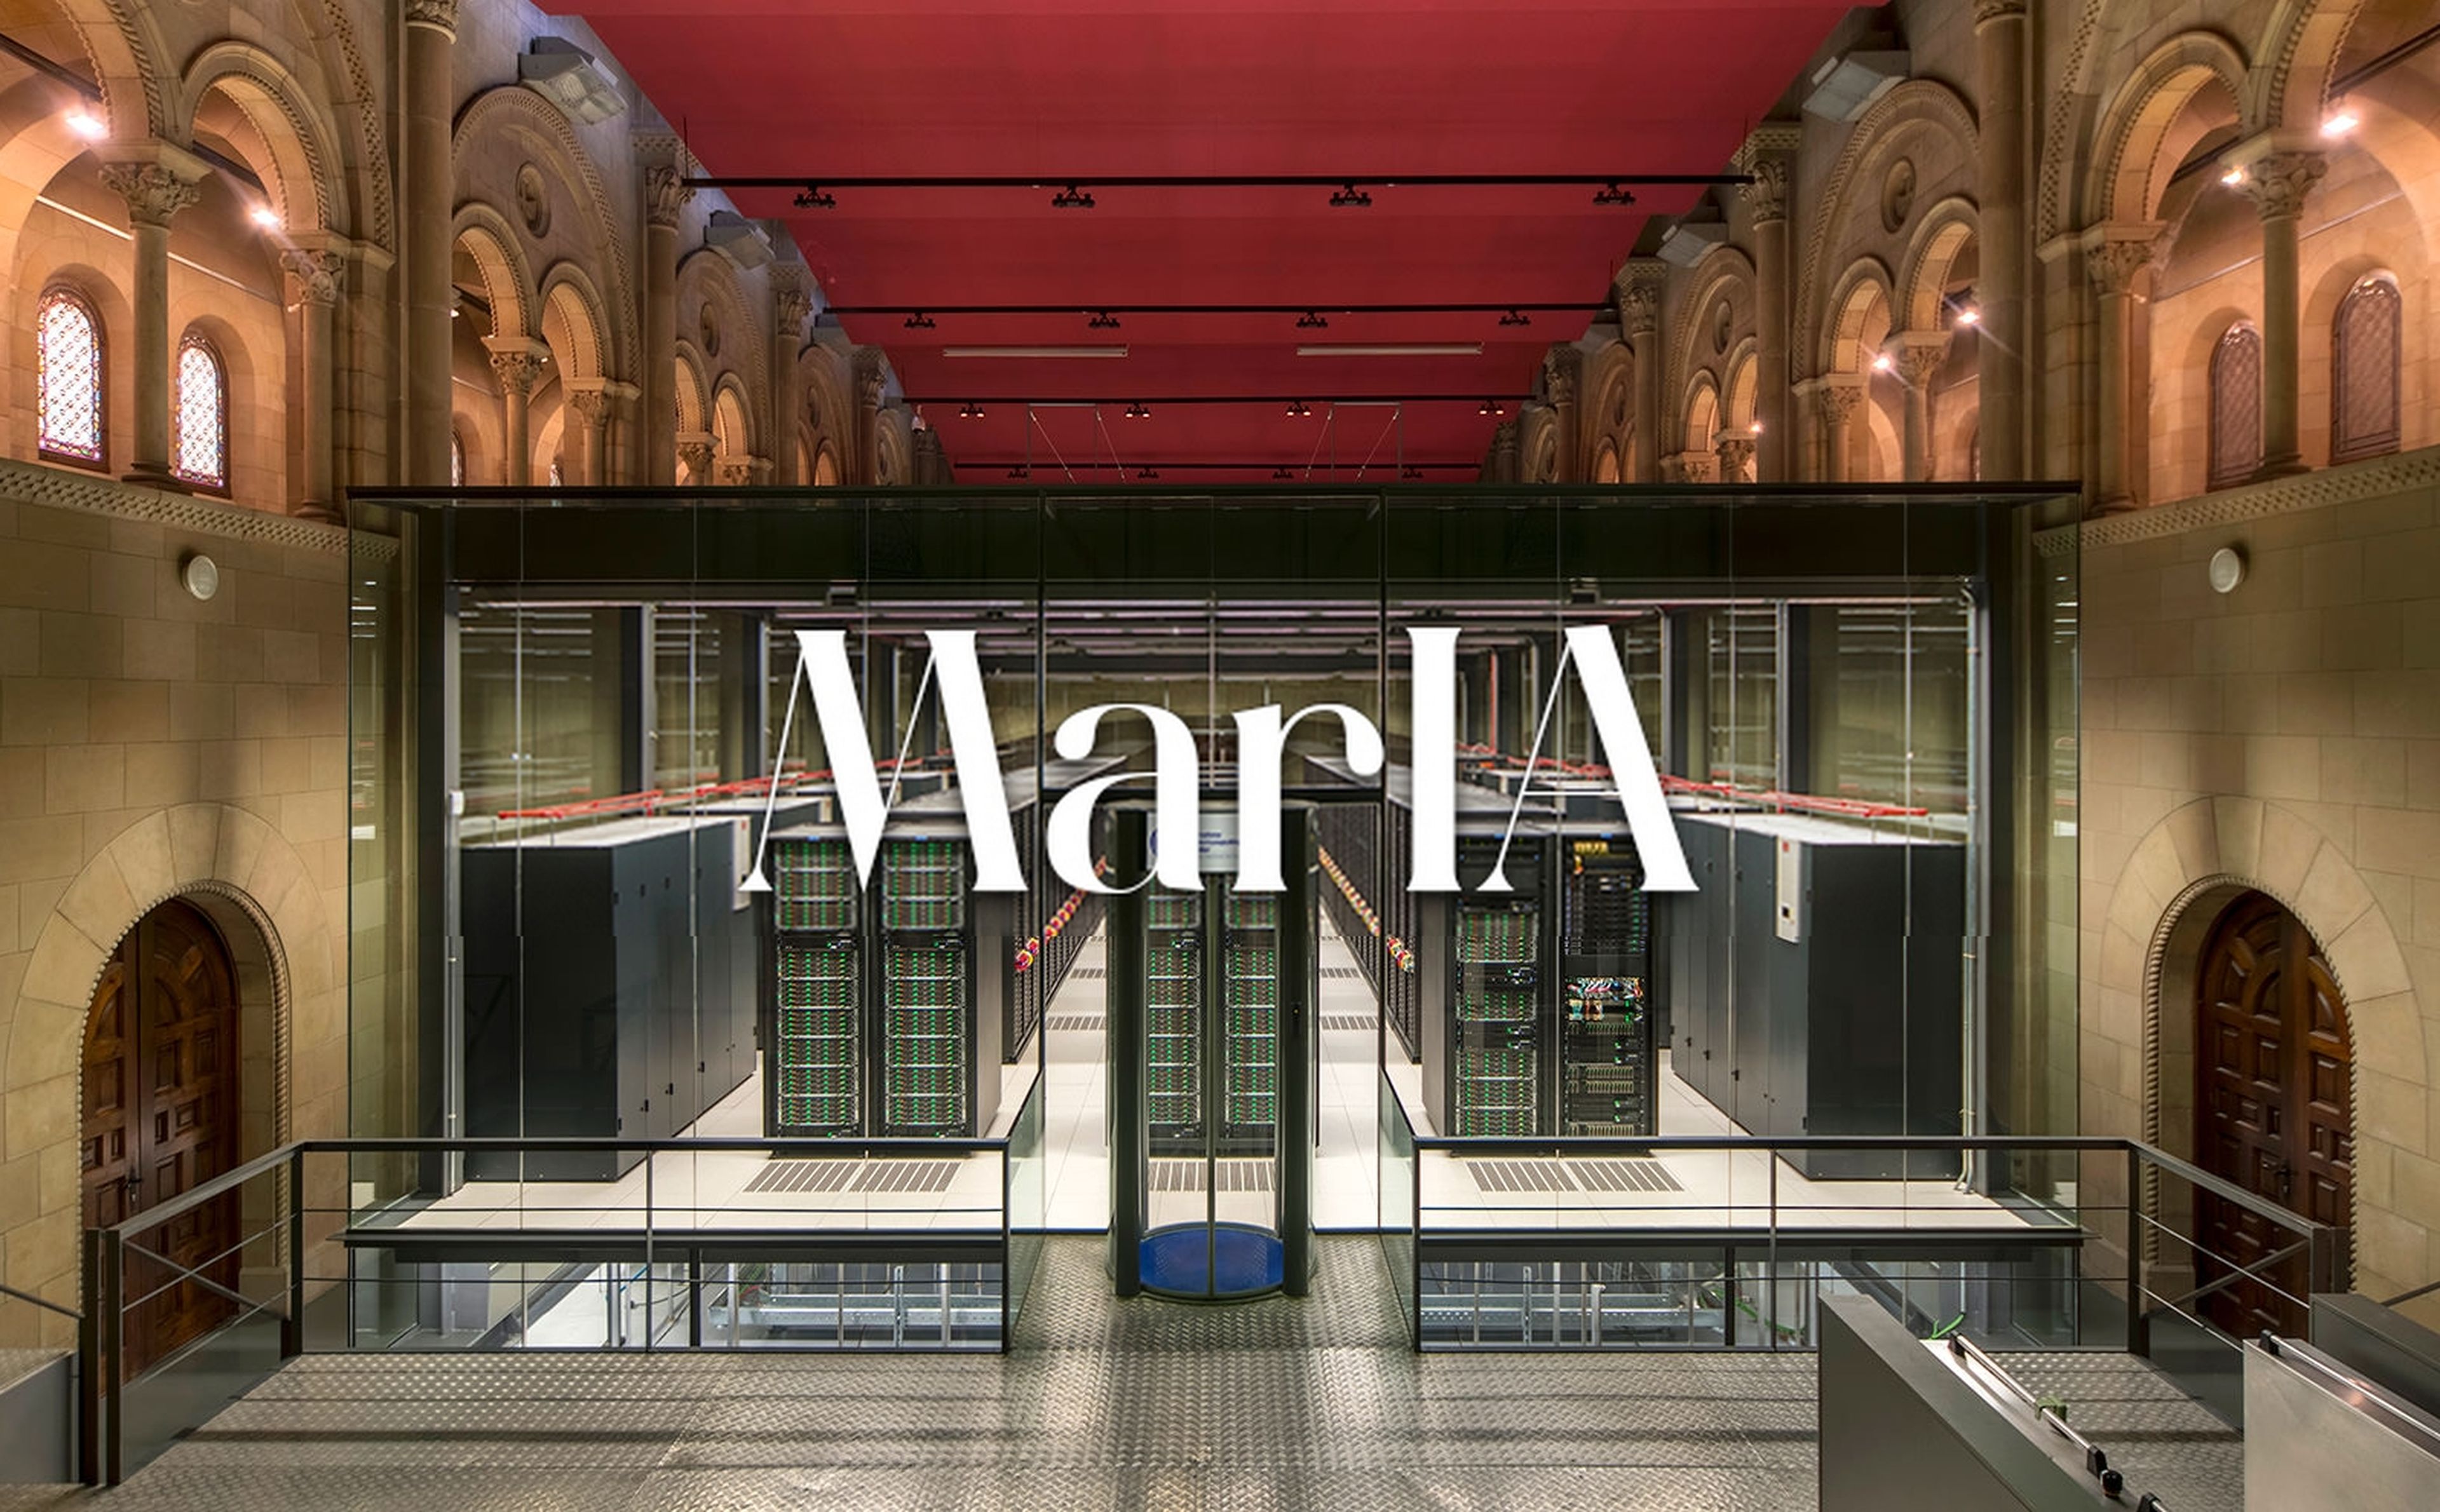 MarIA, la inteligencia artificial experta en lengua española creada con el superordenador MareNostrum, gratis para todo el mundo